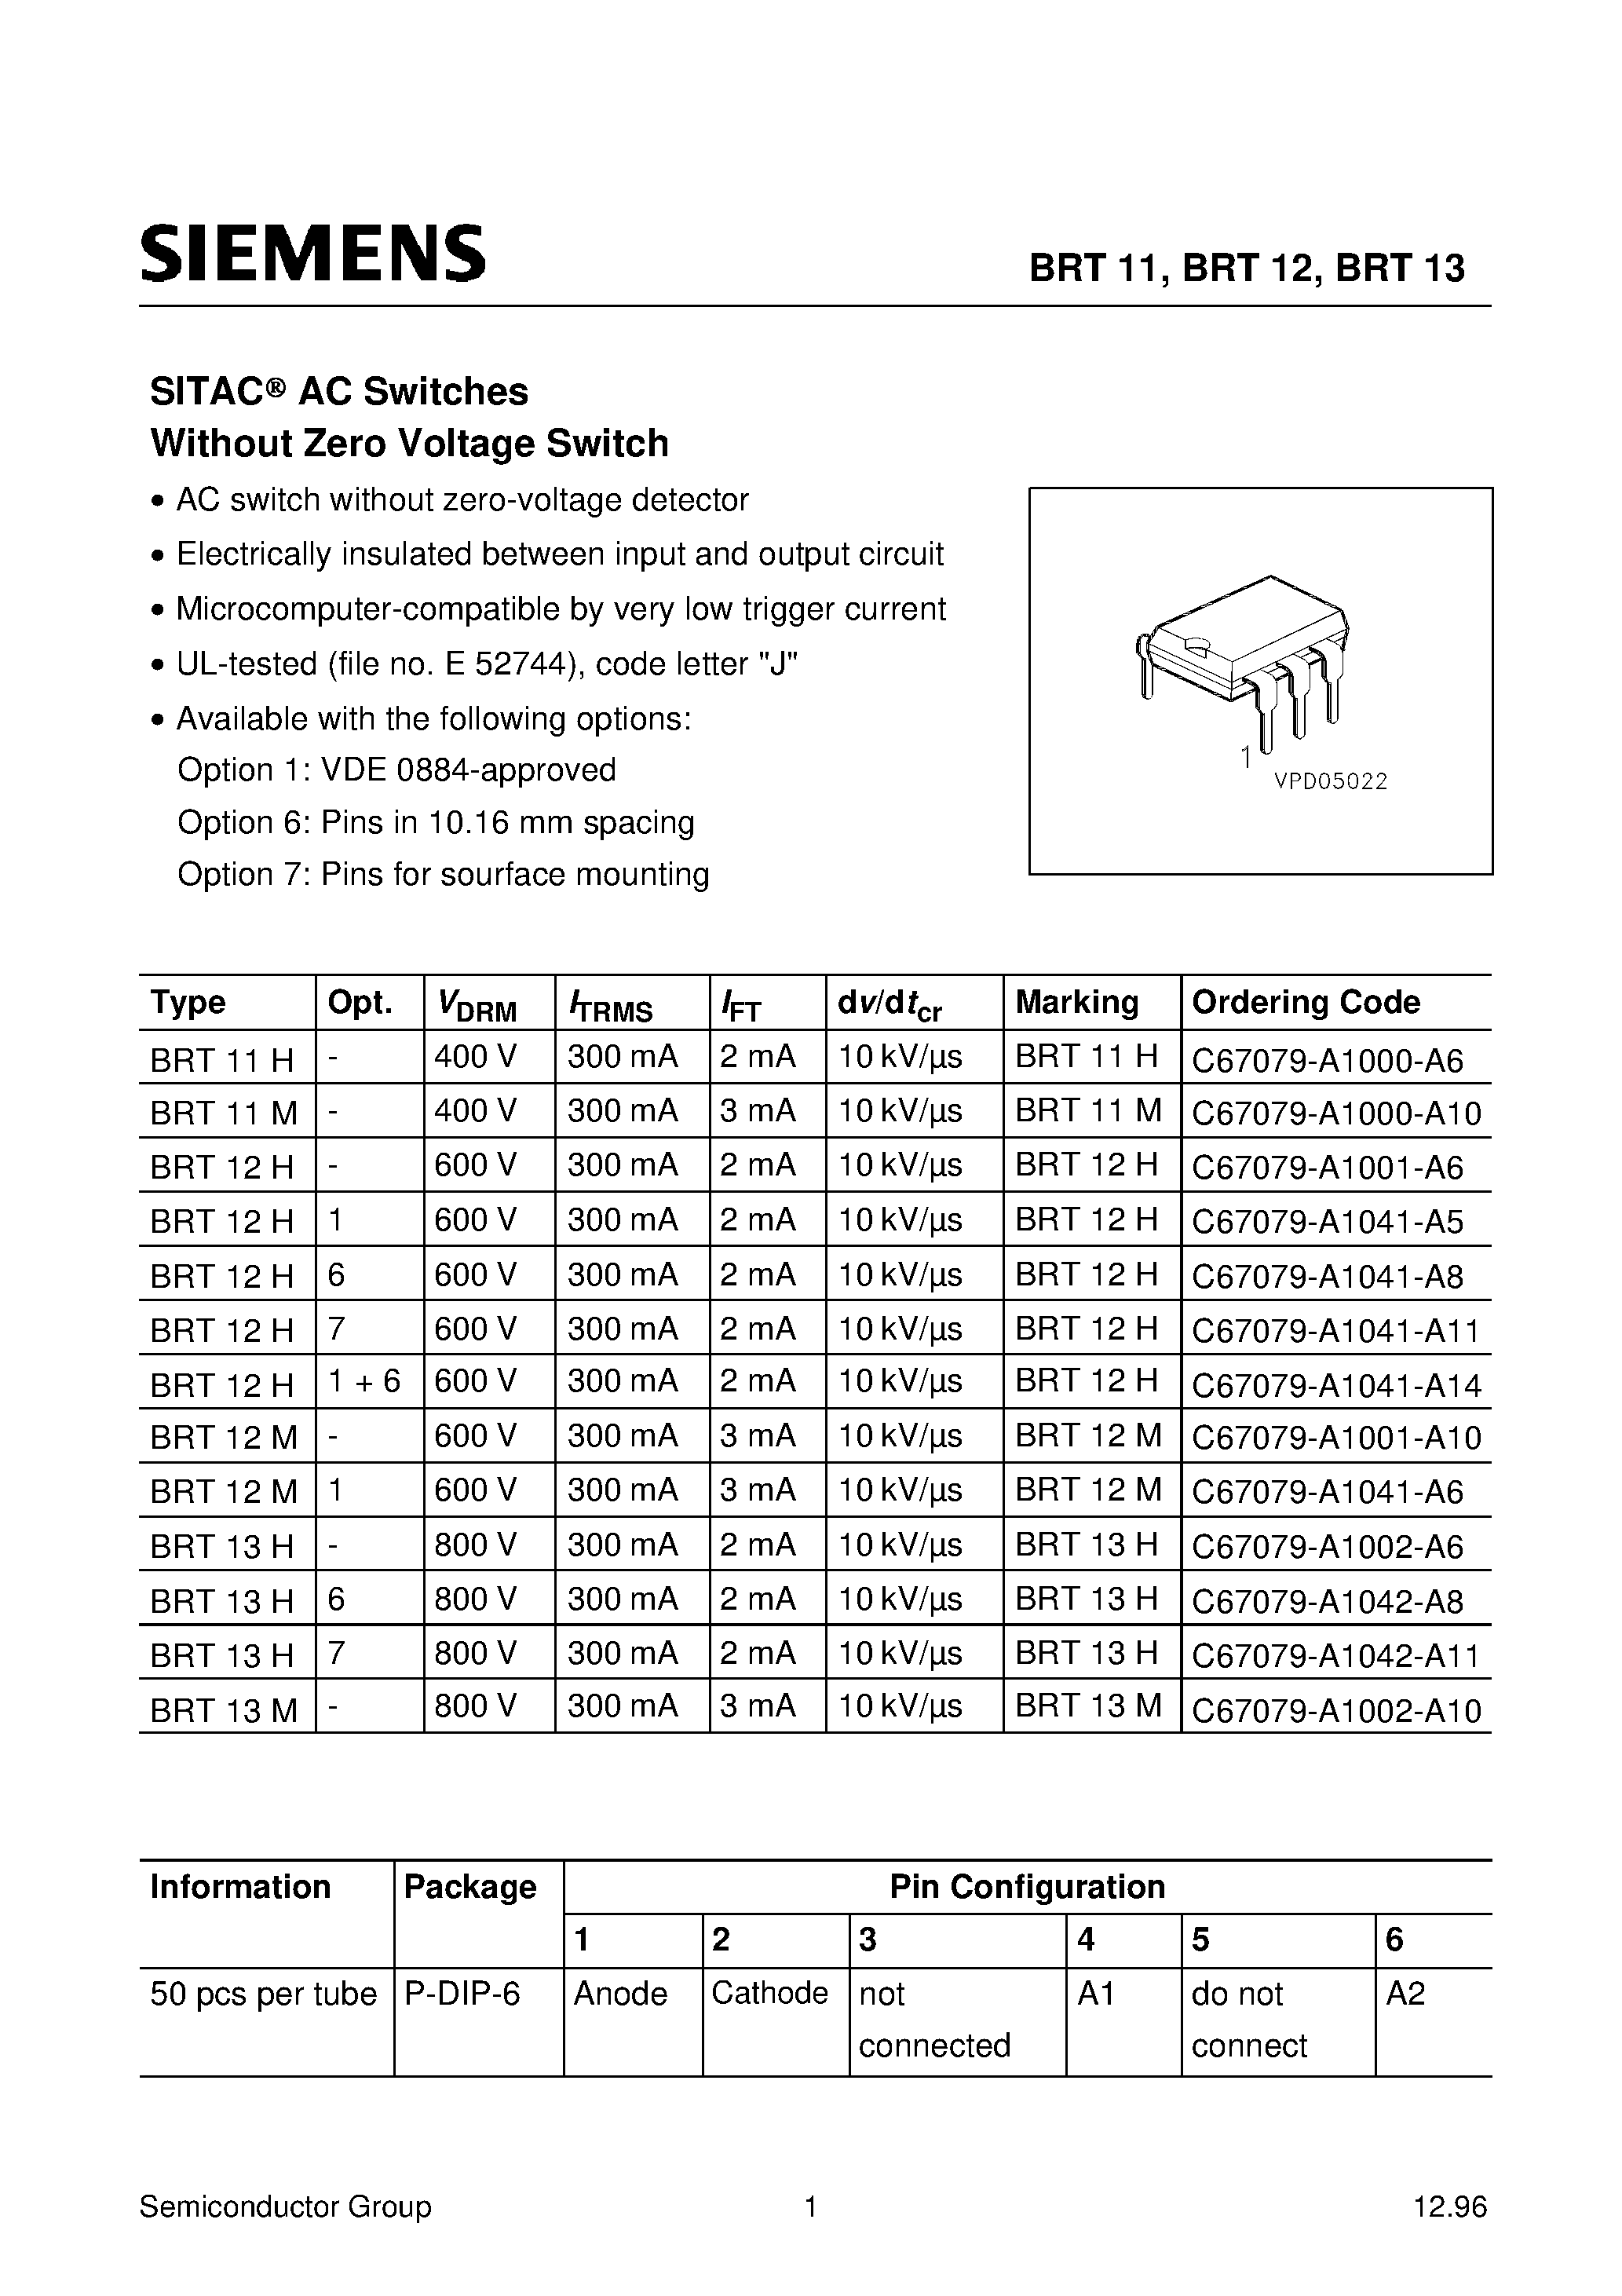 Даташит BRT11M - SITACO AC Switches Without Zero Voltage Switch страница 1